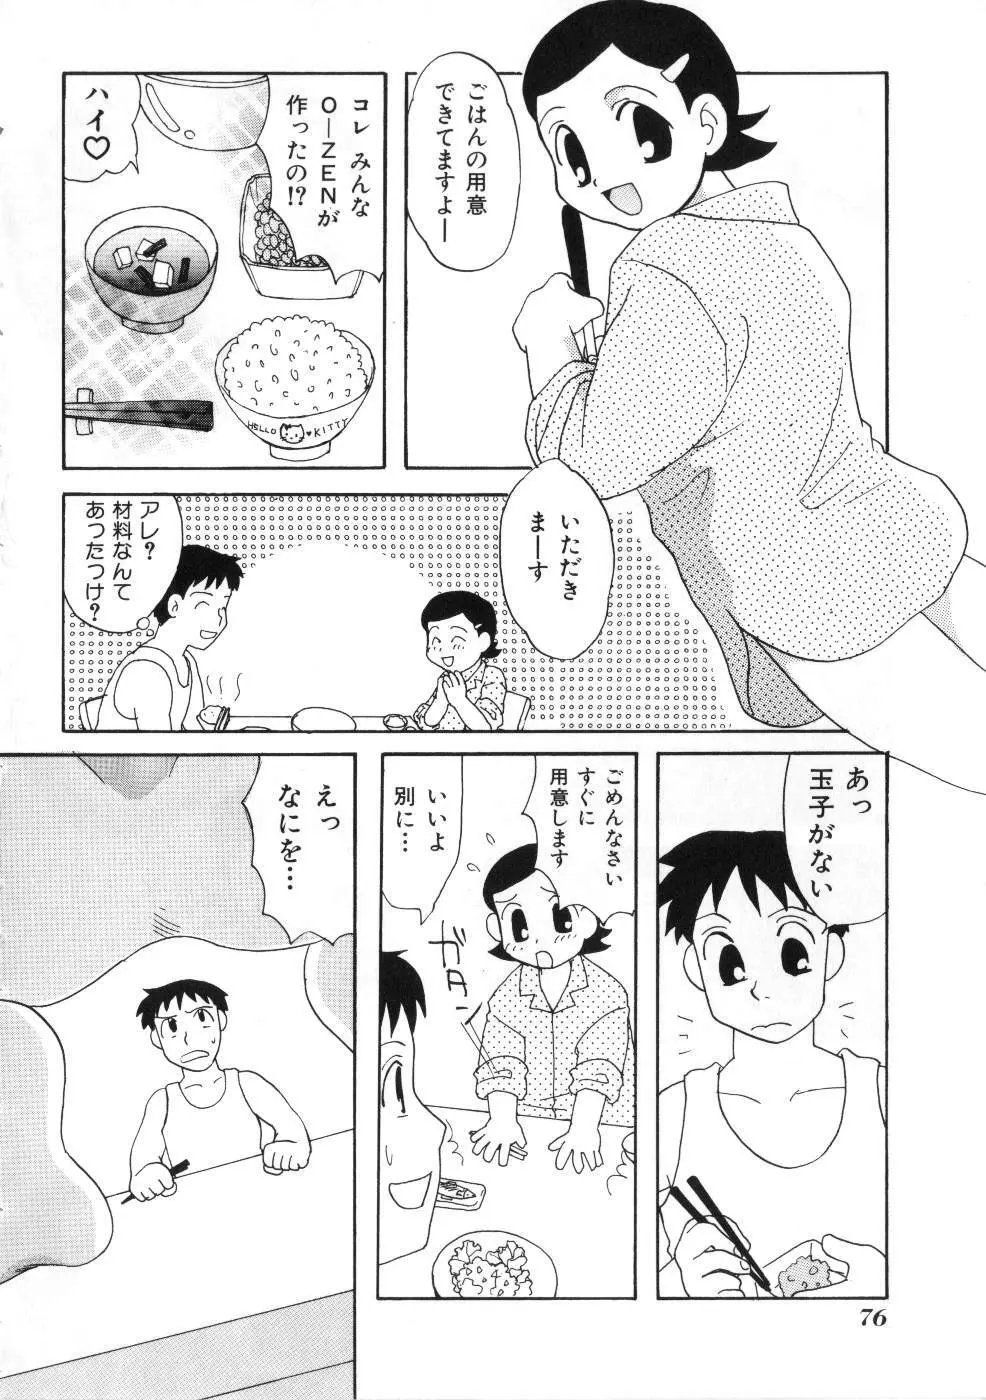 Miss ちゃいどる vol. 1 76ページ